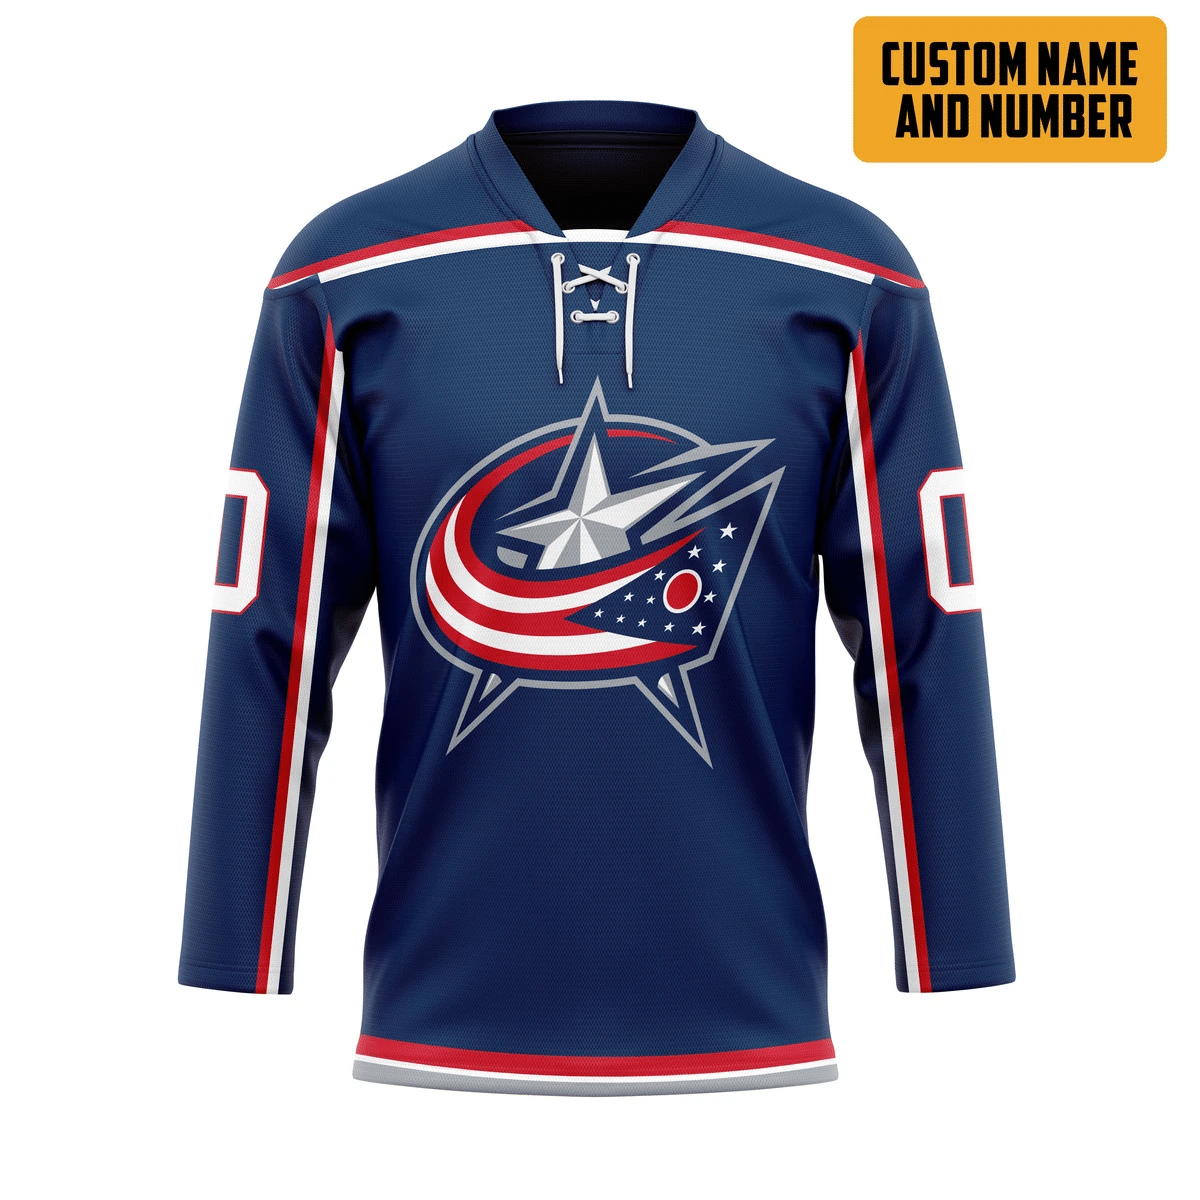 It's only $50 so don't miss out - Be sure to pick up a new hockey shirt today! 373